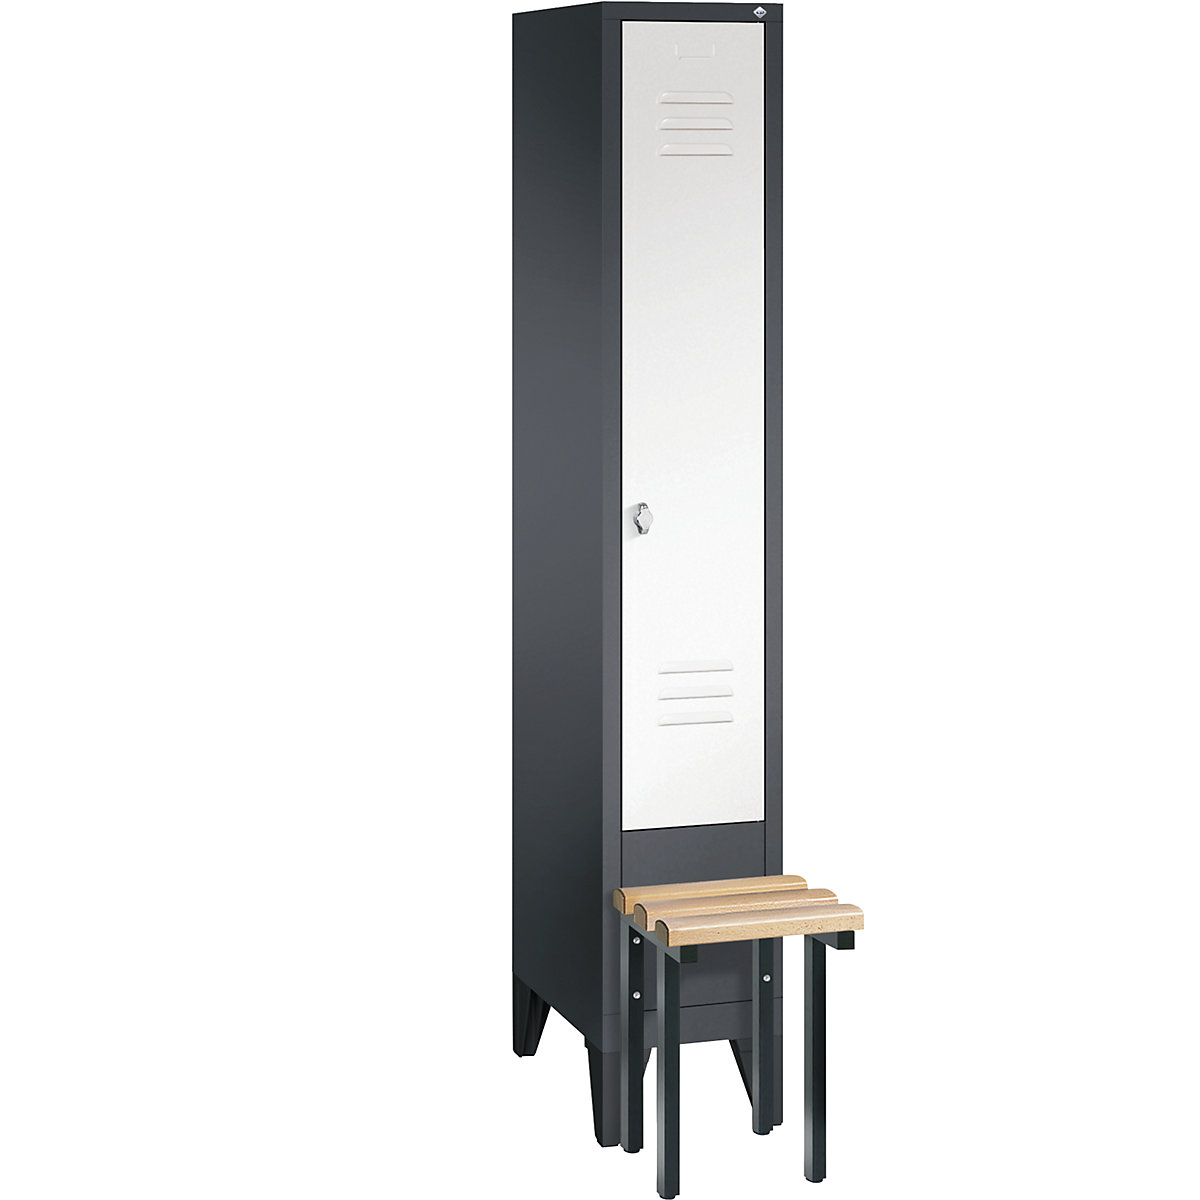 Garderobna omara CLASSIC s klopjo – C+P, 1 predelek, širina 300 mm/predelek, črno sive / prometno bele barve-5